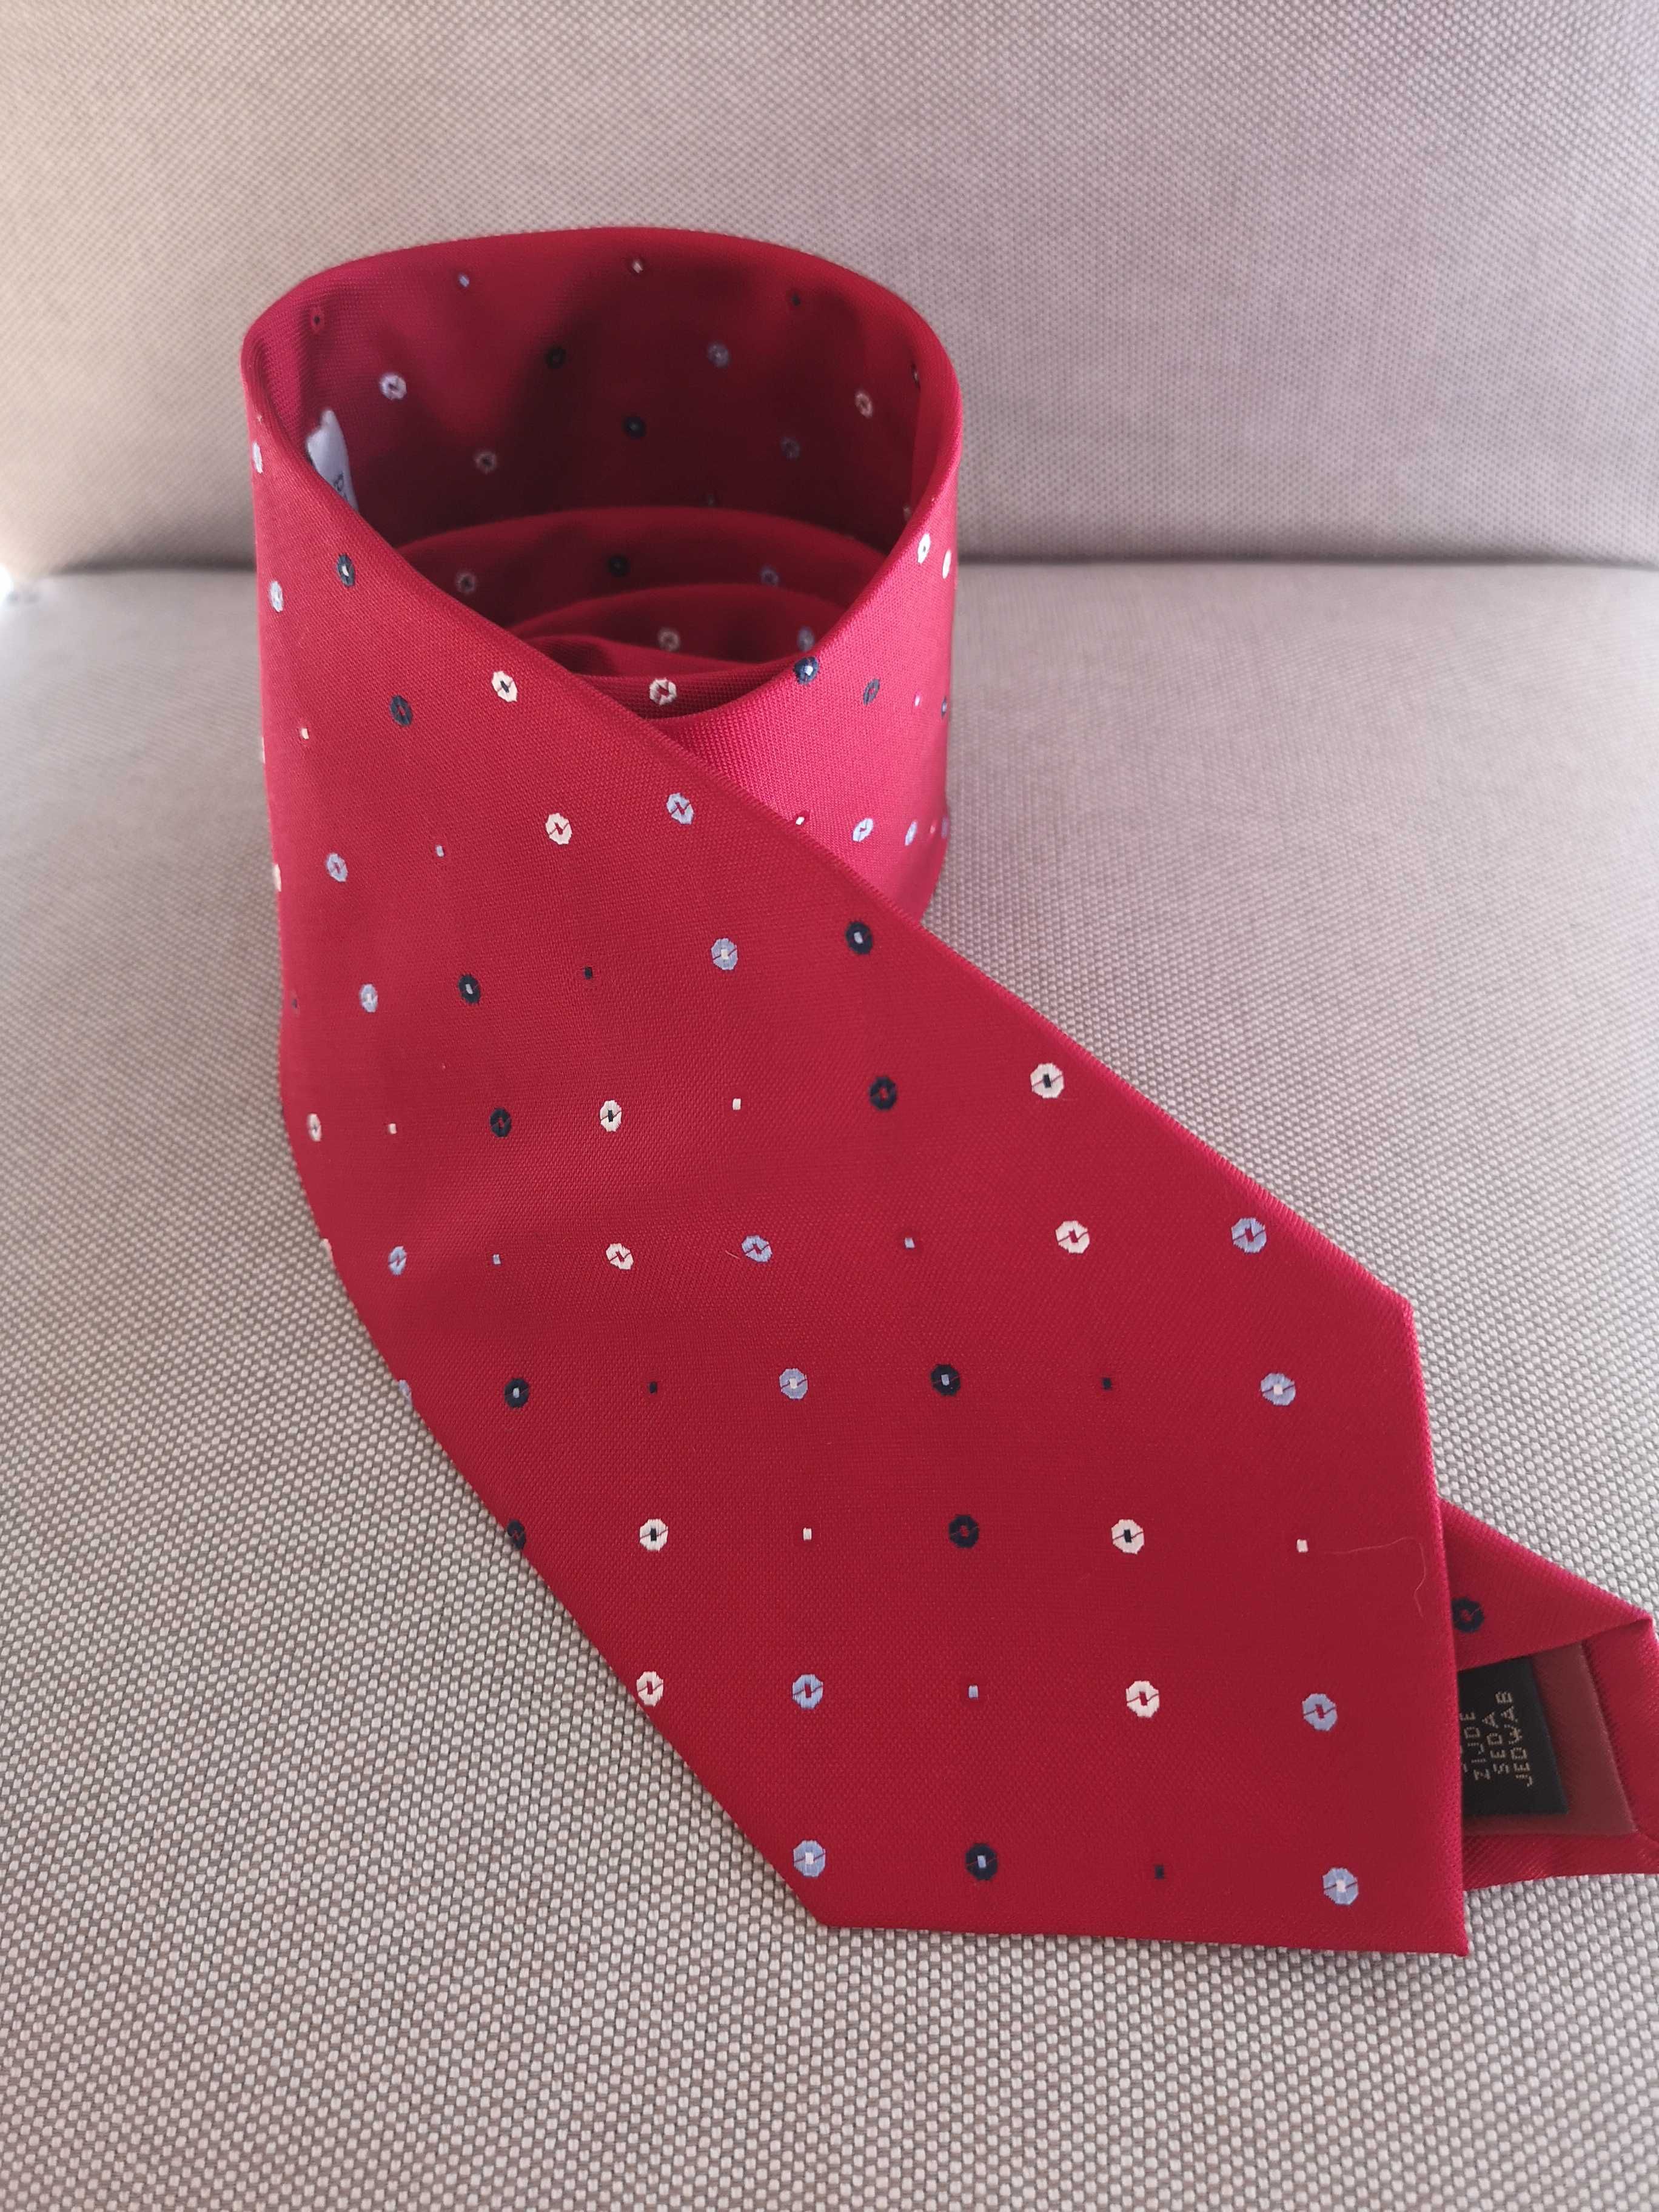 paolo negrato czerwony jedwabny krawat 100% jedwab